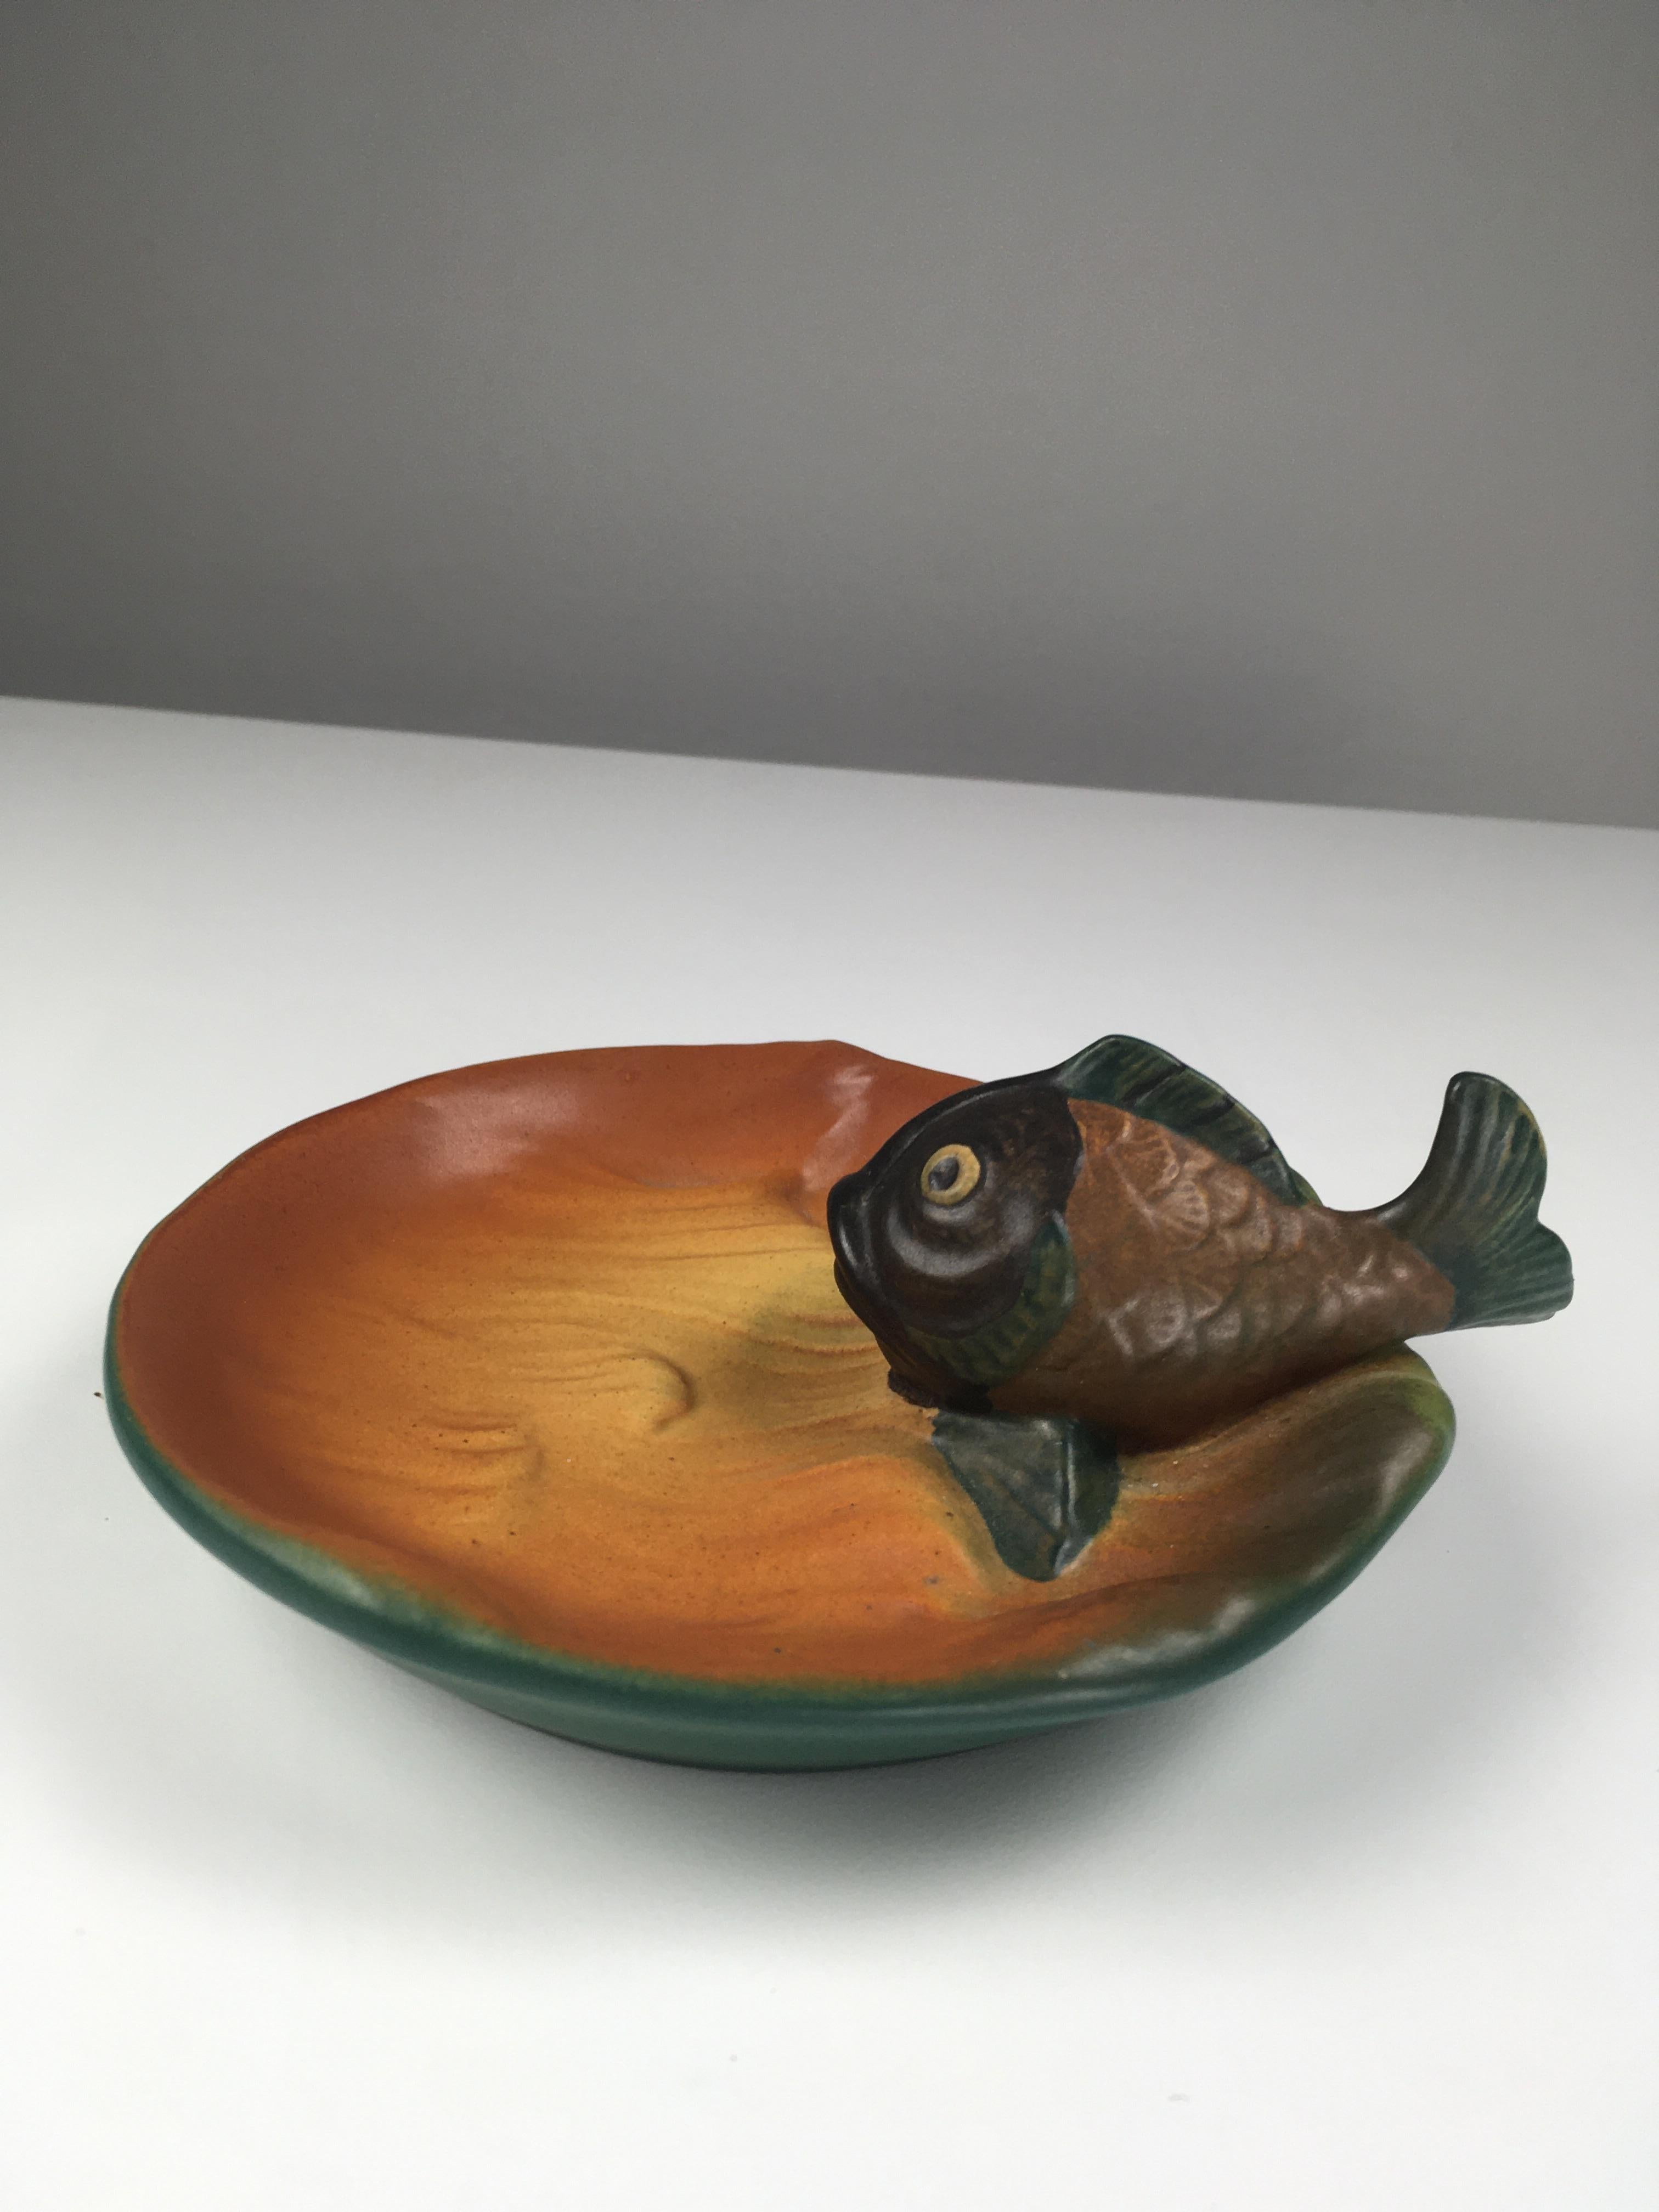 Cendrier / bol à poisson Art Nouveau danois conçu par Axel Sørensen en 1927 pour P. Ipsen Enke.

Le cendrier / bol art nuveau présente un poisson vivant bien fait à la main et est en excellent état.

Ipsen/One (1843 - 1955) était une entreprise très